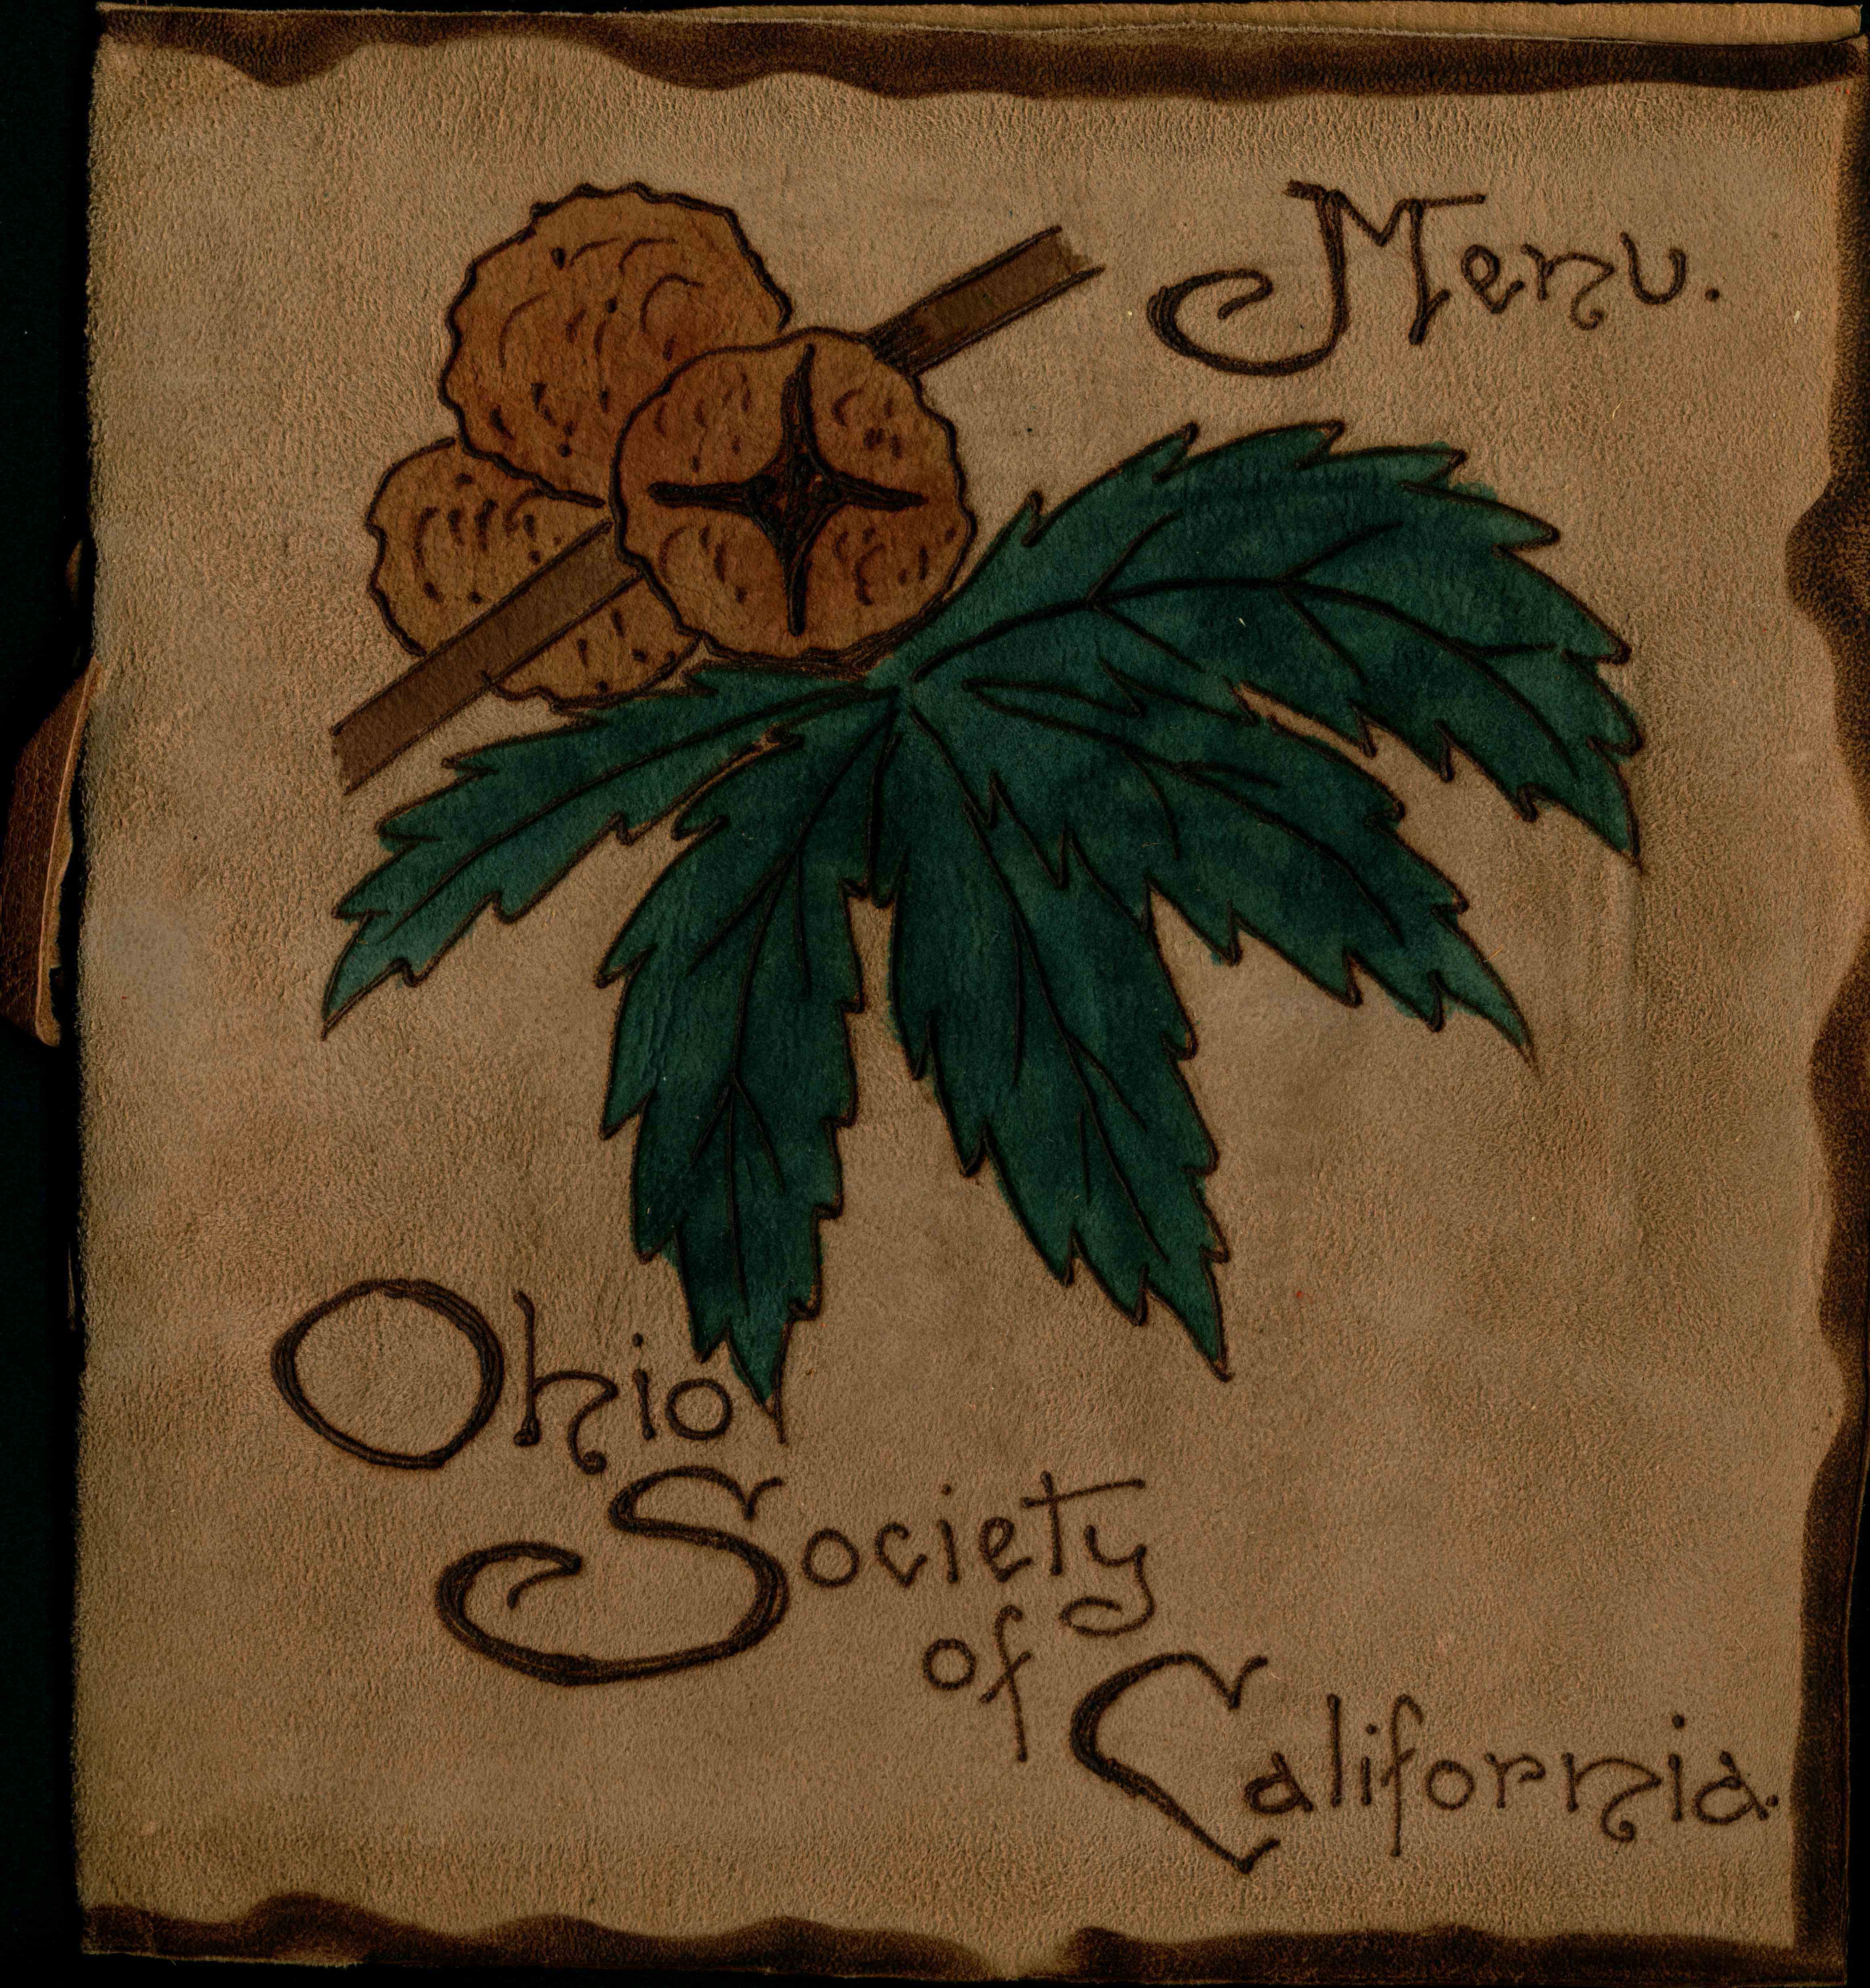 Ohio Society of California